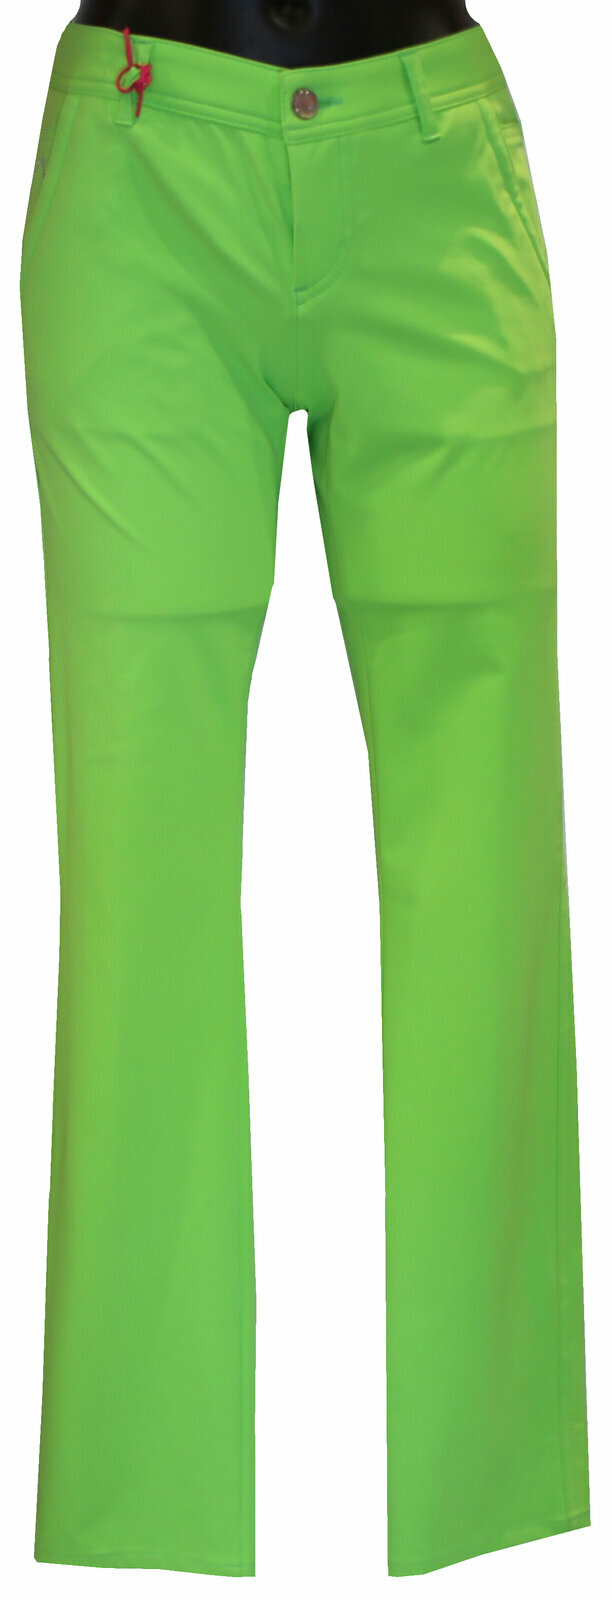 Pantalons Alberto Alva 3xDRY Cooler Green 42/R